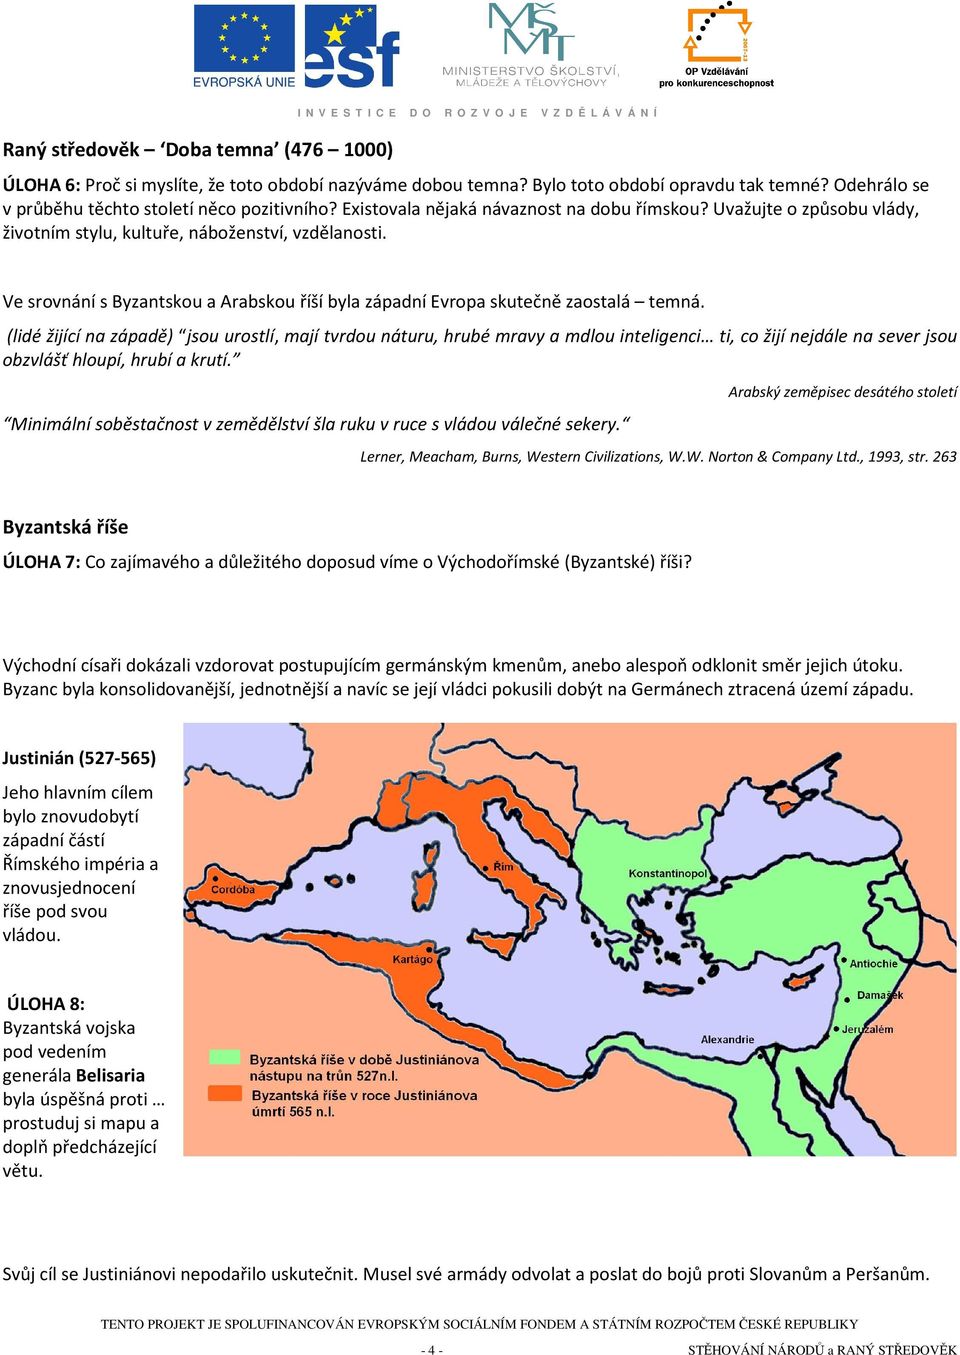 Ve srovnání s Byzantskou a Arabskou říší byla západní Evropa skutečně zaostalá temná.